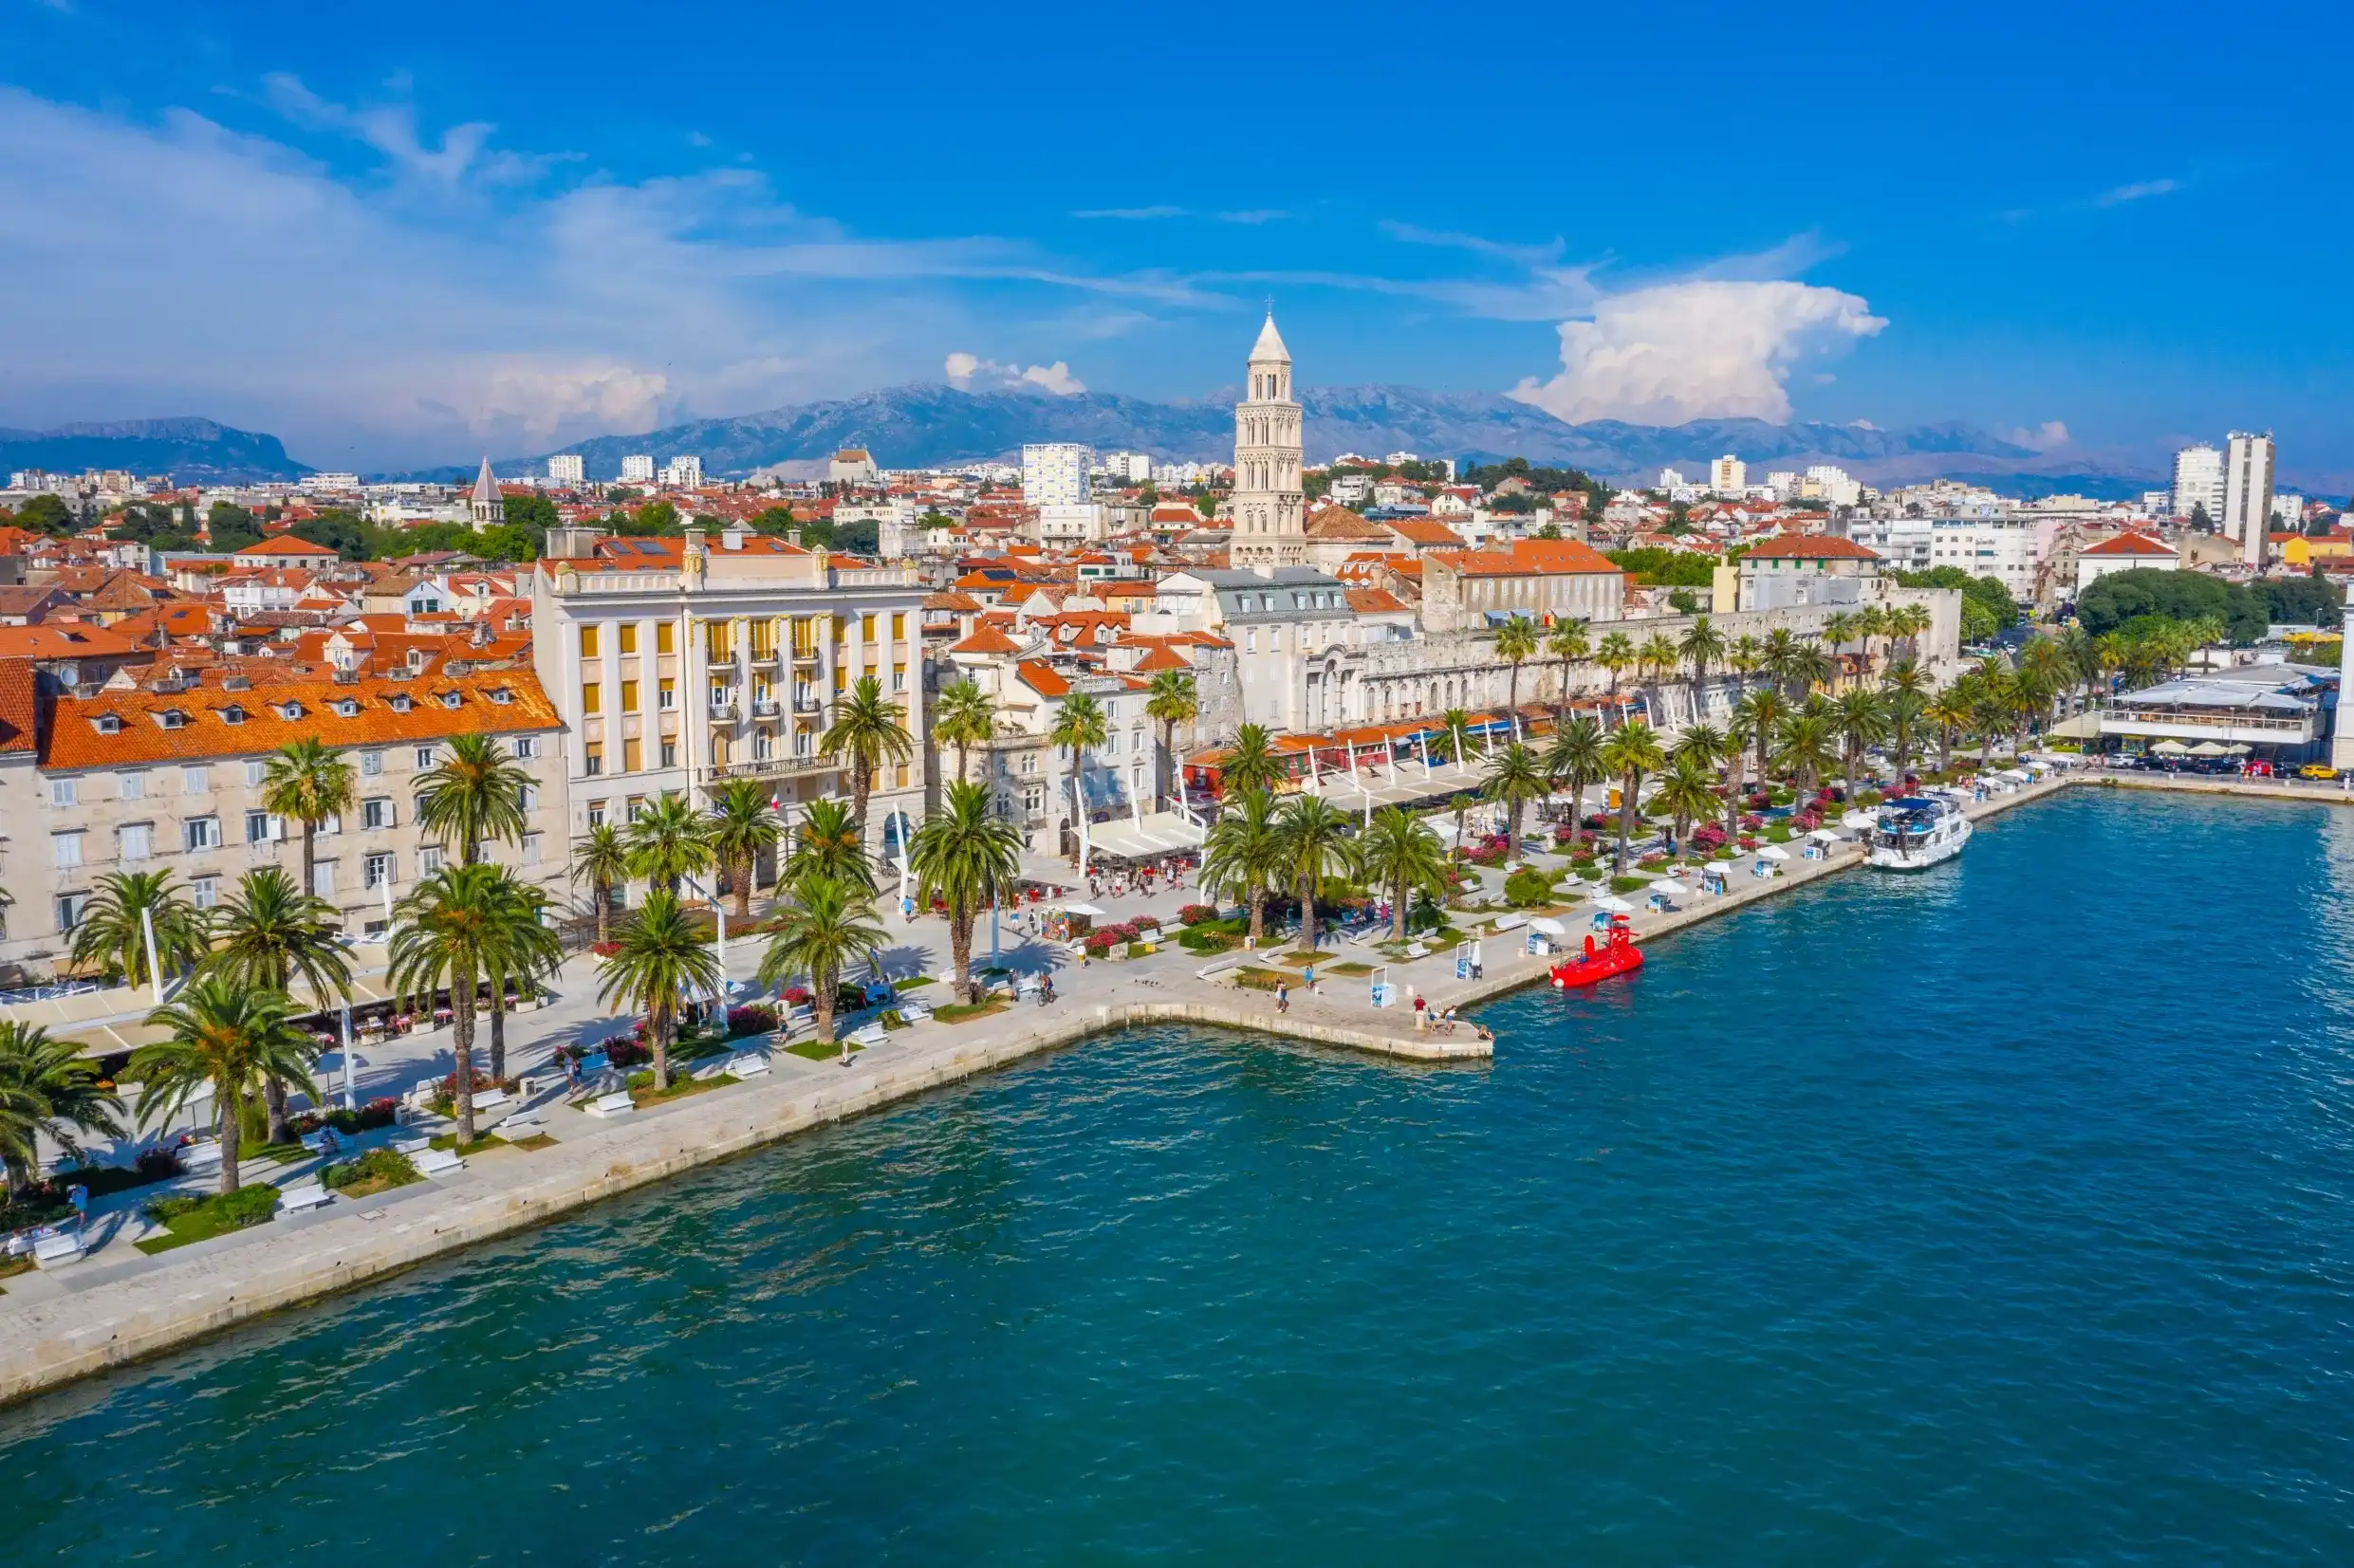 Split-Dalmatia hotels. Best hotels in Split-Dalmatia, Croatia